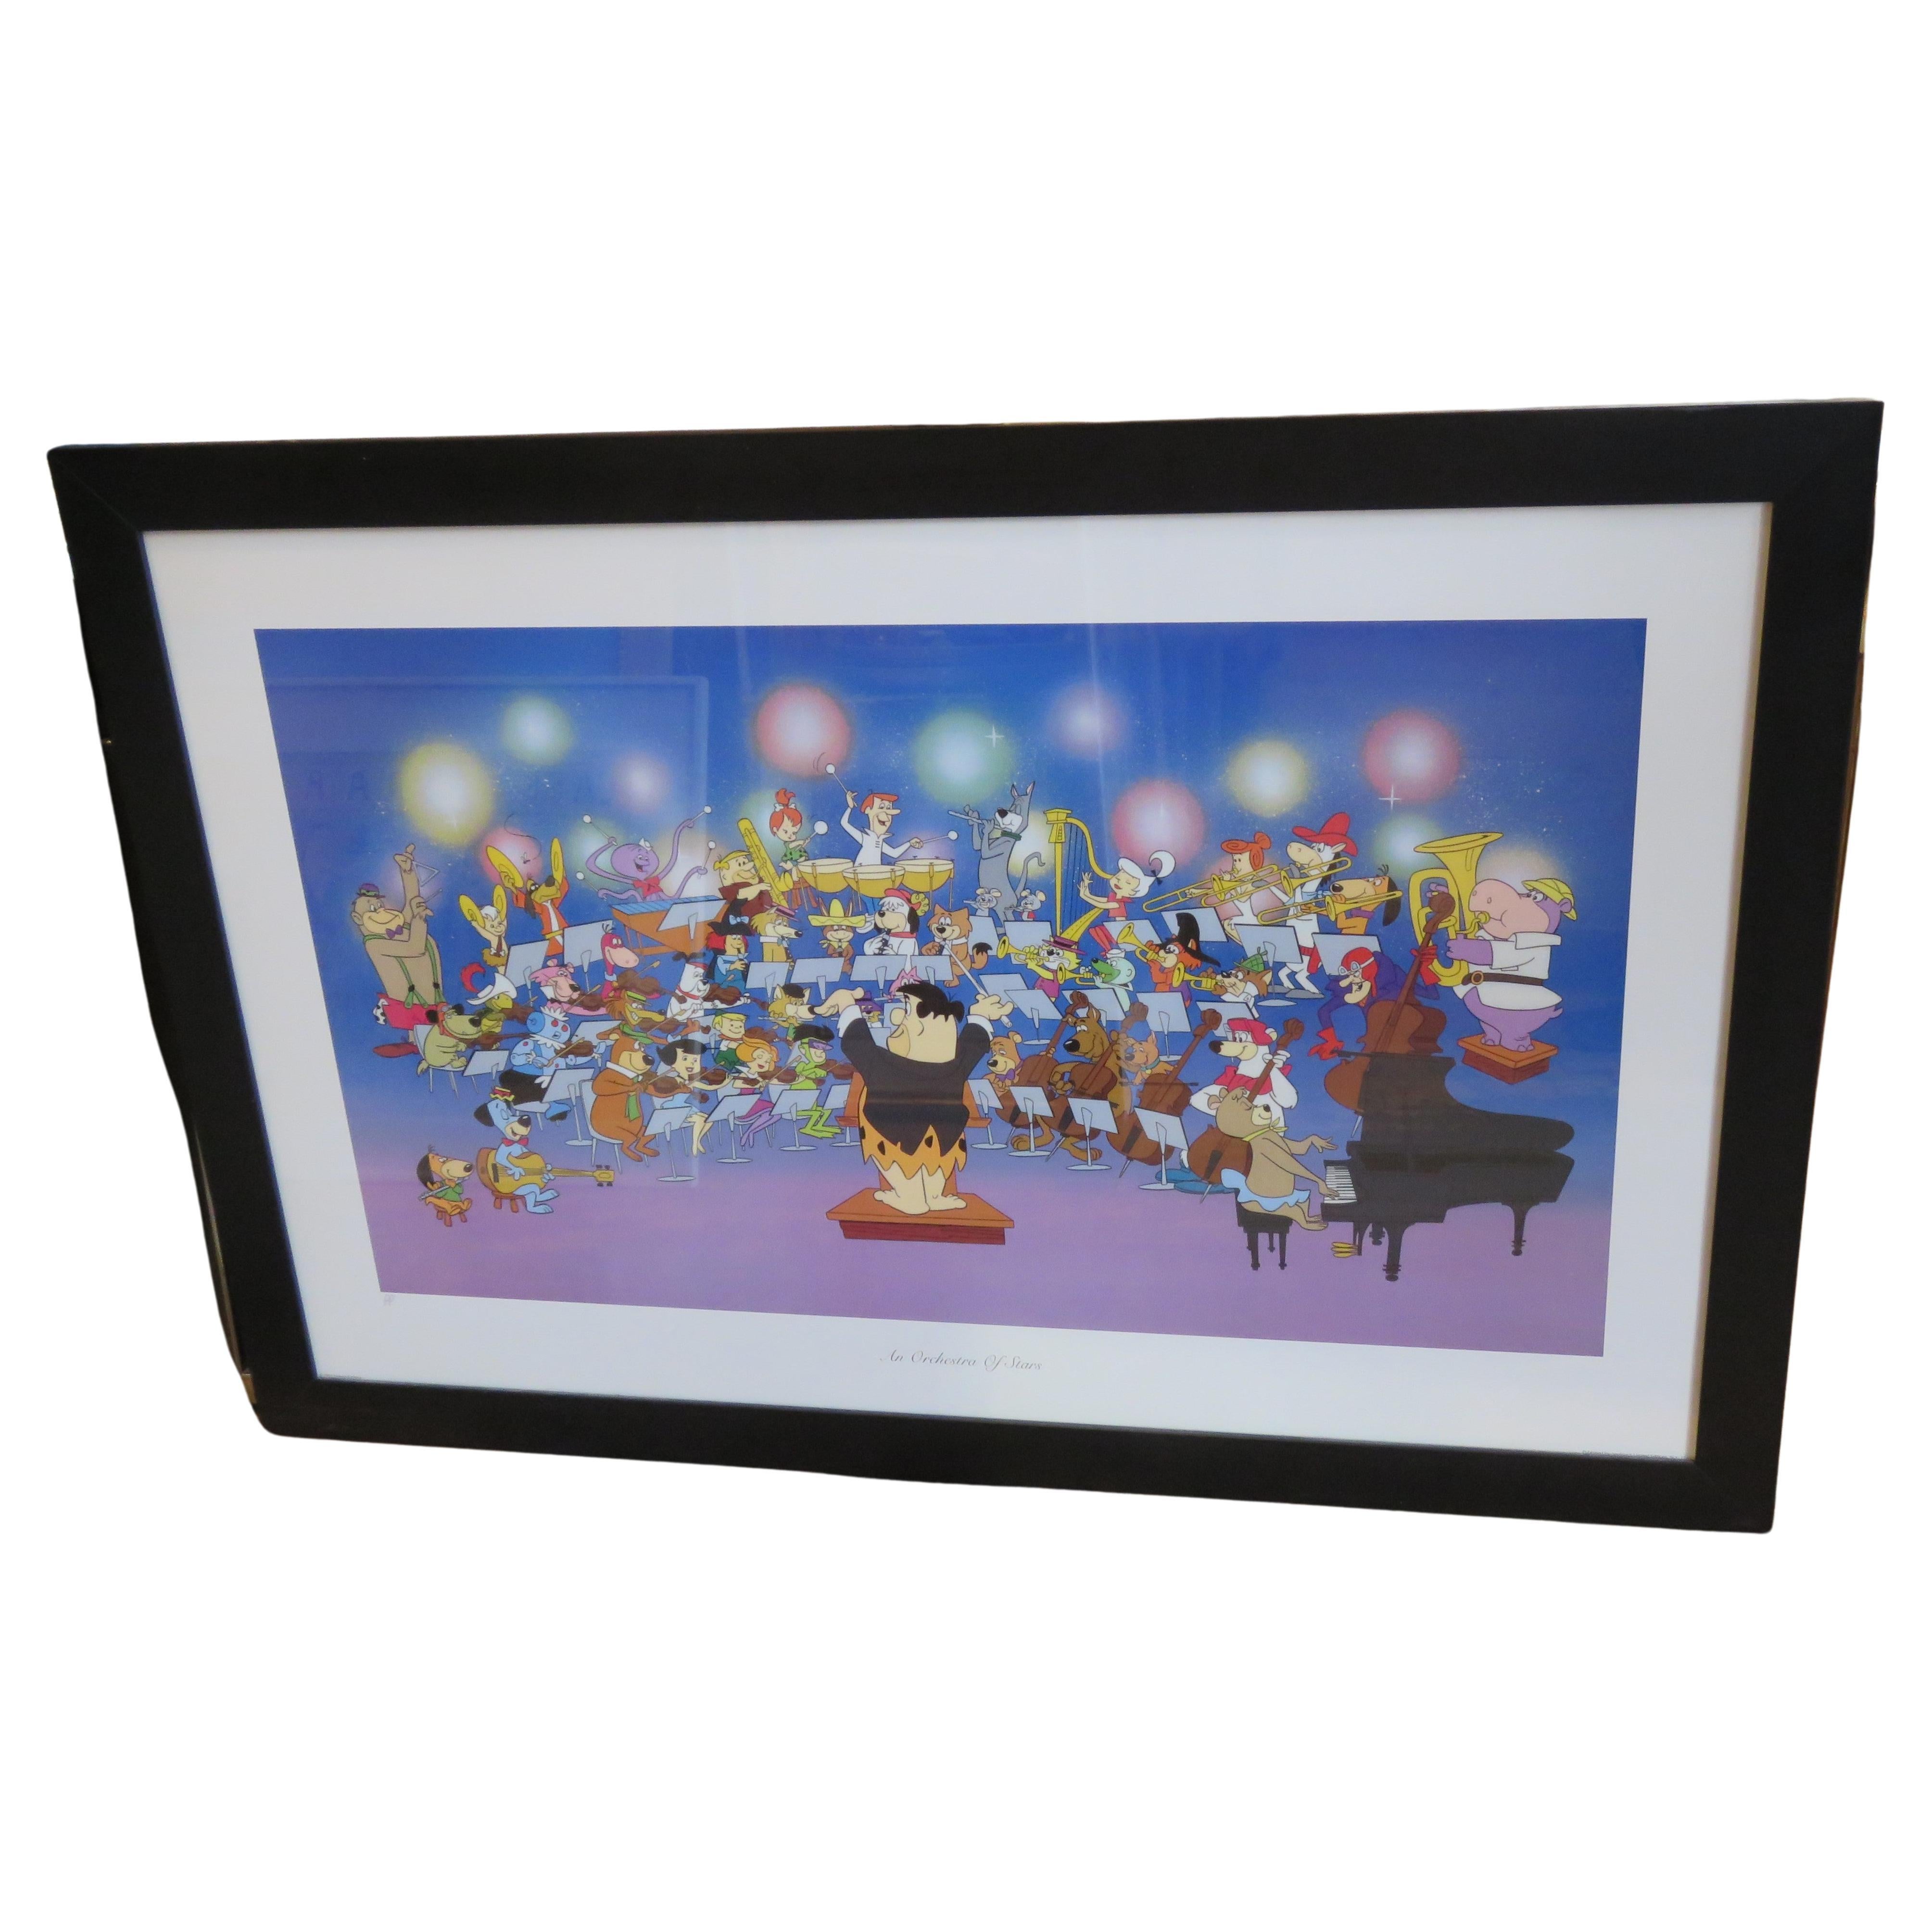 Rare Estate Printers Proof Framed Hanna Barbera Flintstones Jetsons Orchestra  For Sale